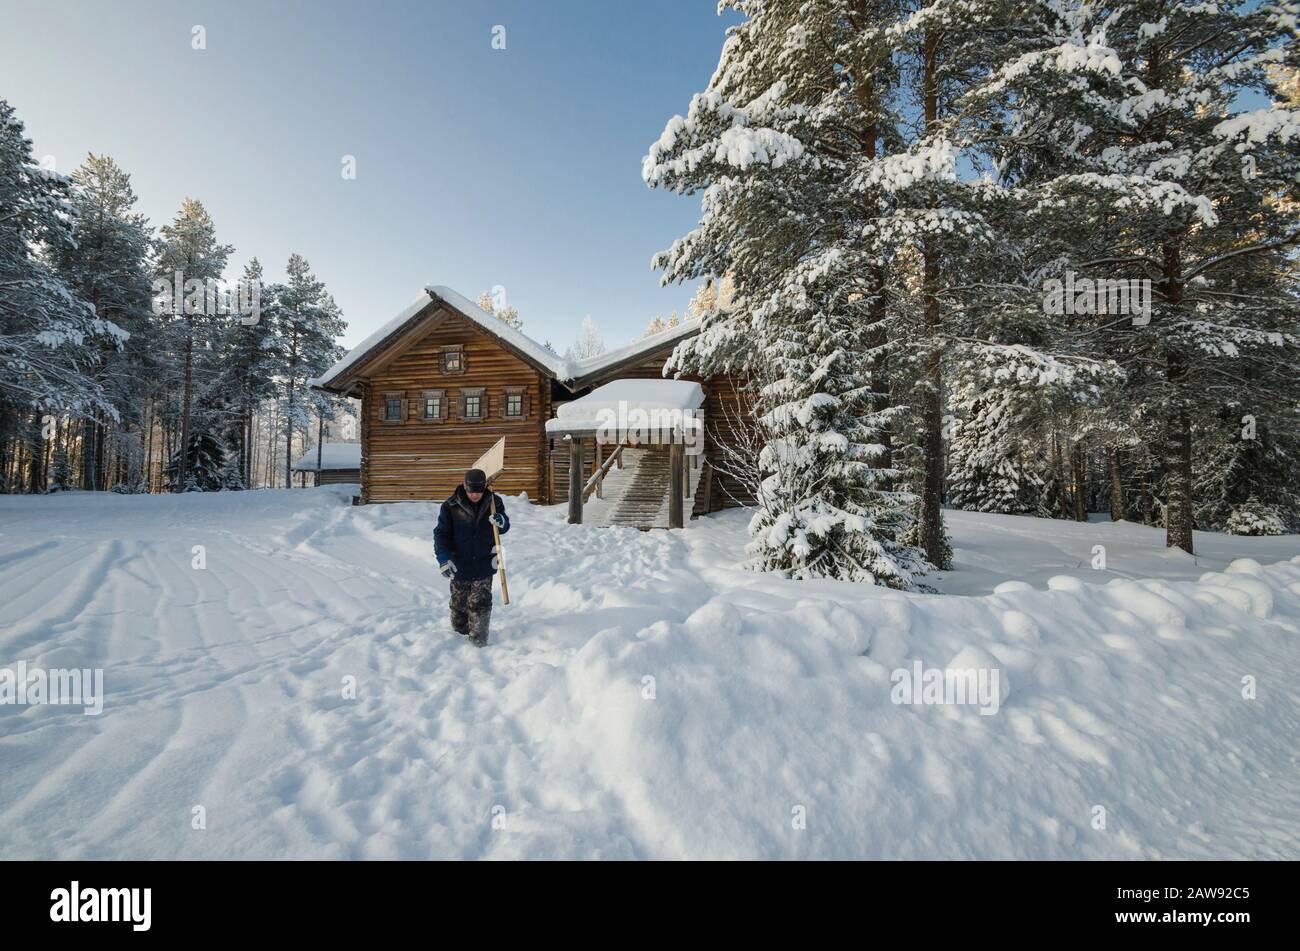 Concierge avec une pelle parmi les maisons de village en bois. Musée de l'architecture en bois 'Mall Korely'. Russie, Arkhangelsk regi Banque D'Images